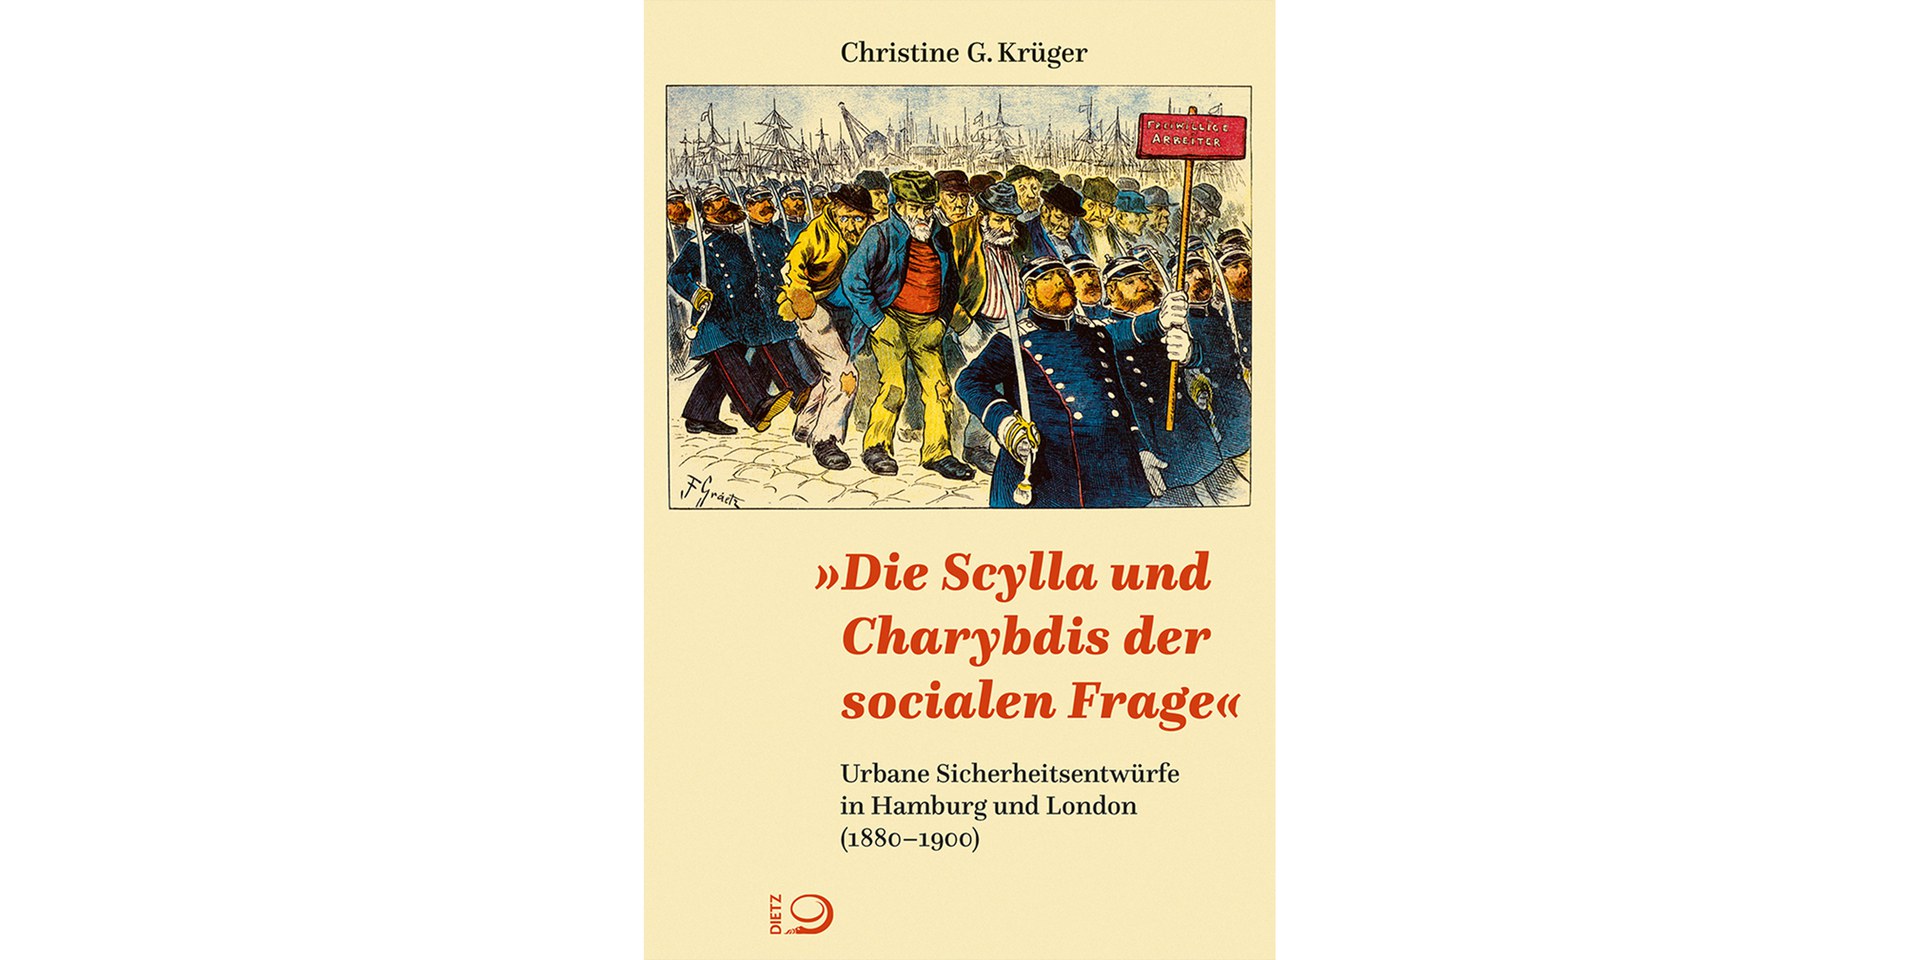 Christine Krüger: "Die Scylla und Charybdis der socialen Frage"